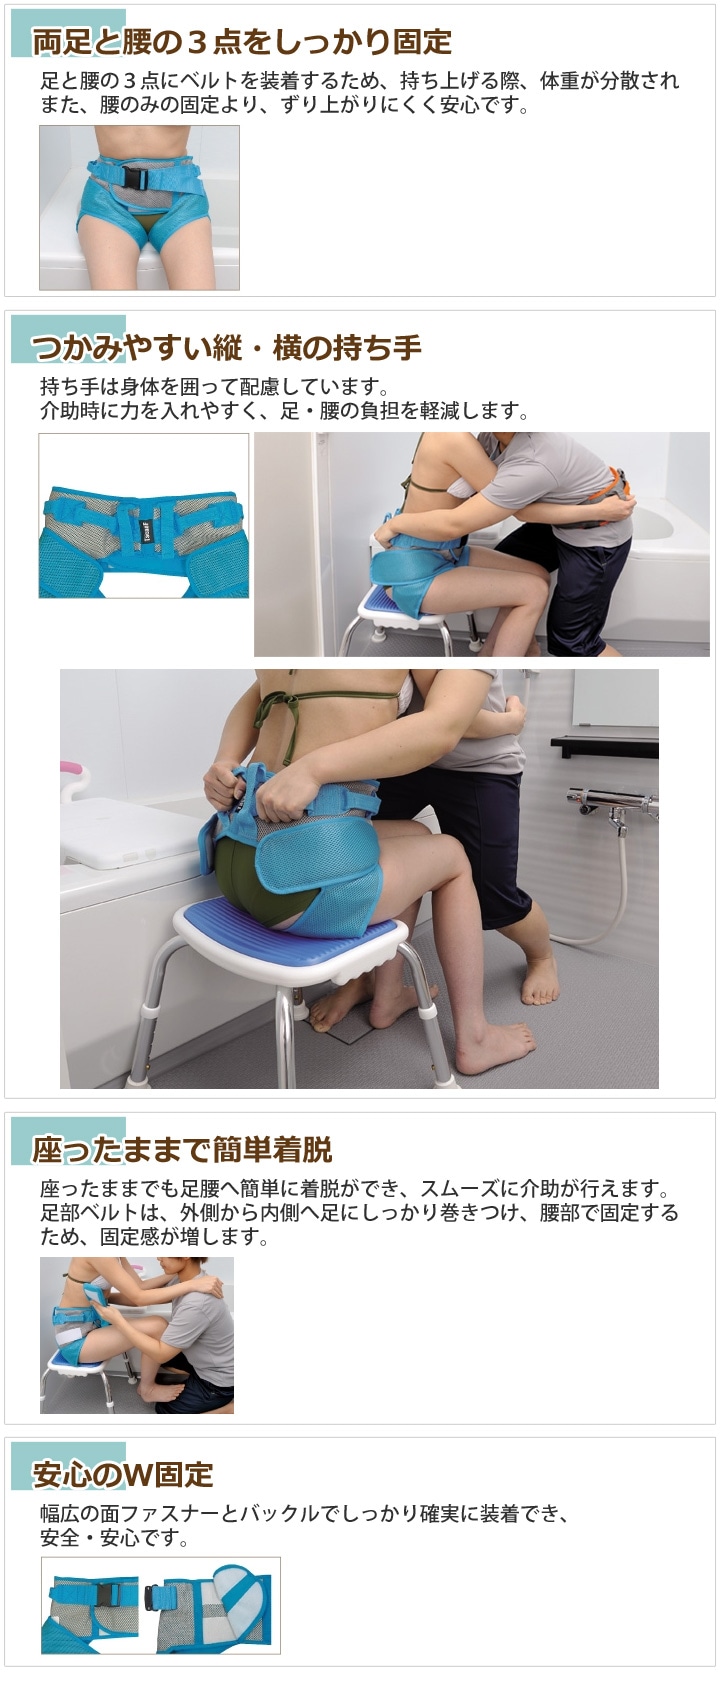 テイコブX型入浴用介助ベルト【M】-介護用品通販のロッキー